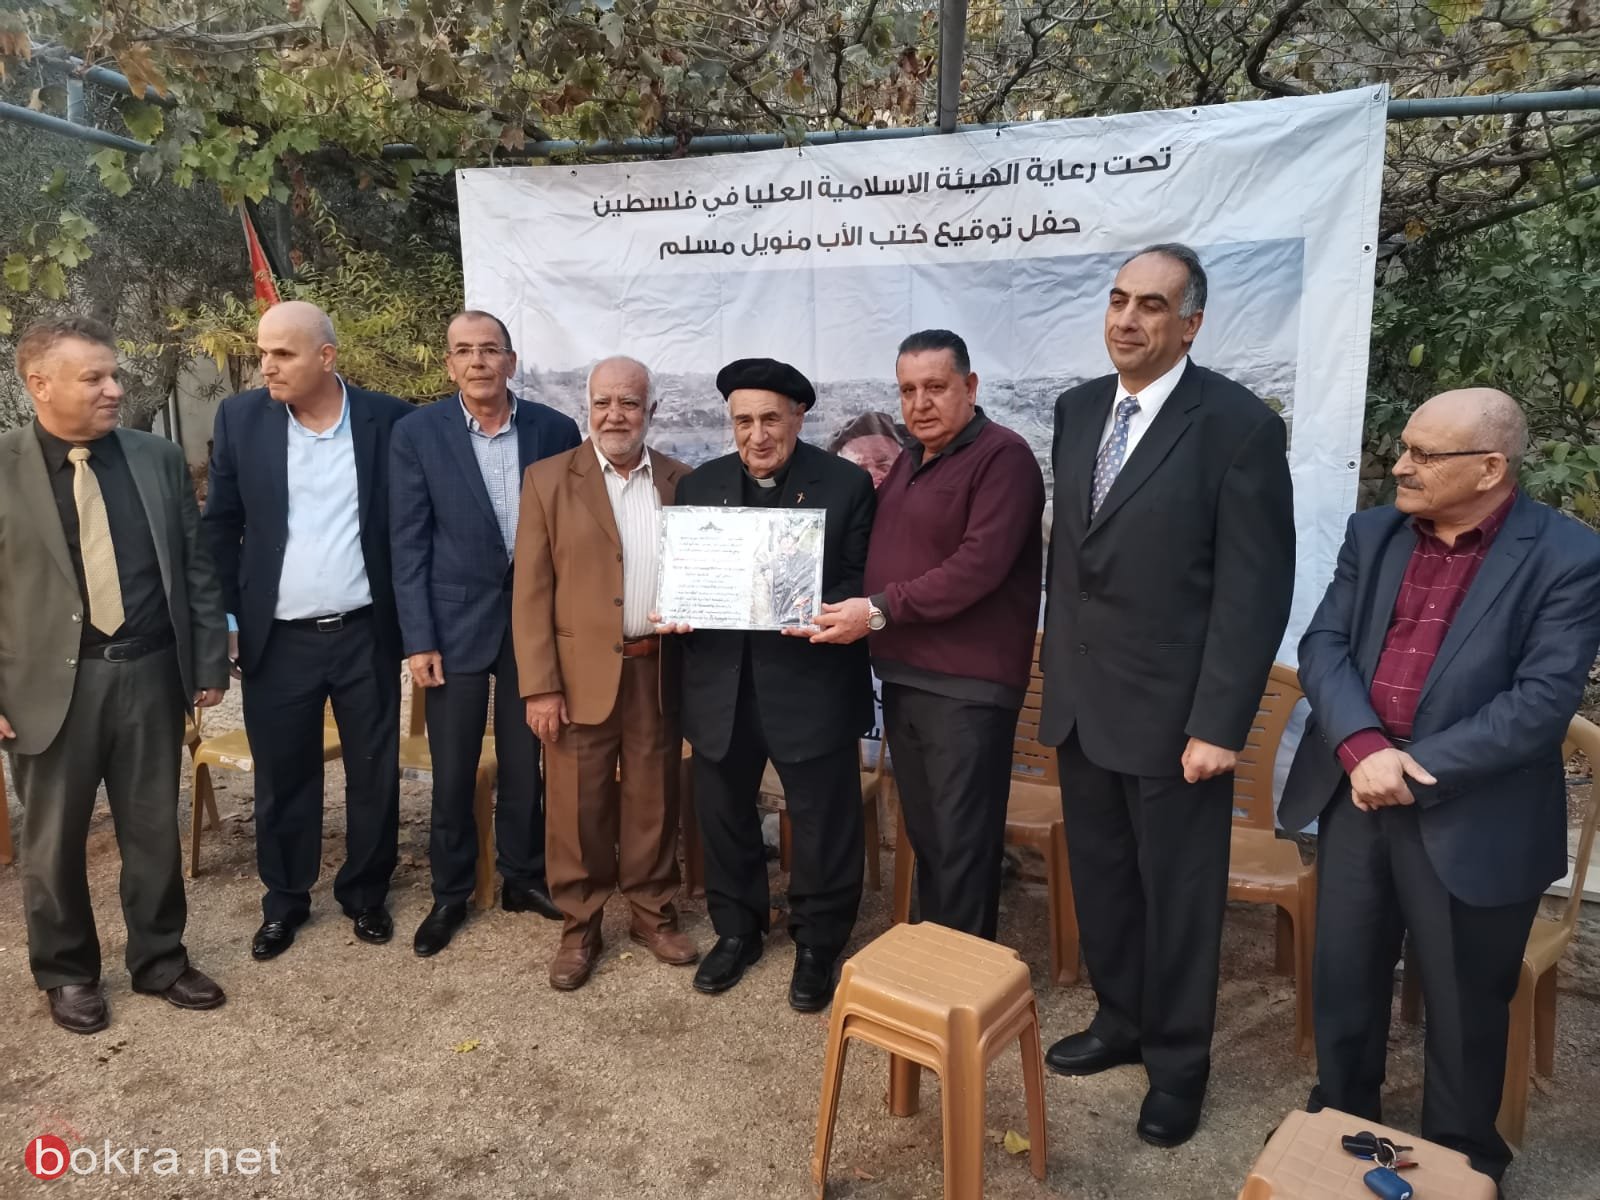 مجموعة الاخوة المقدسيين تكرم الأب مناويل مسلم لمواقفه تجاه القدس وفلسطين-2